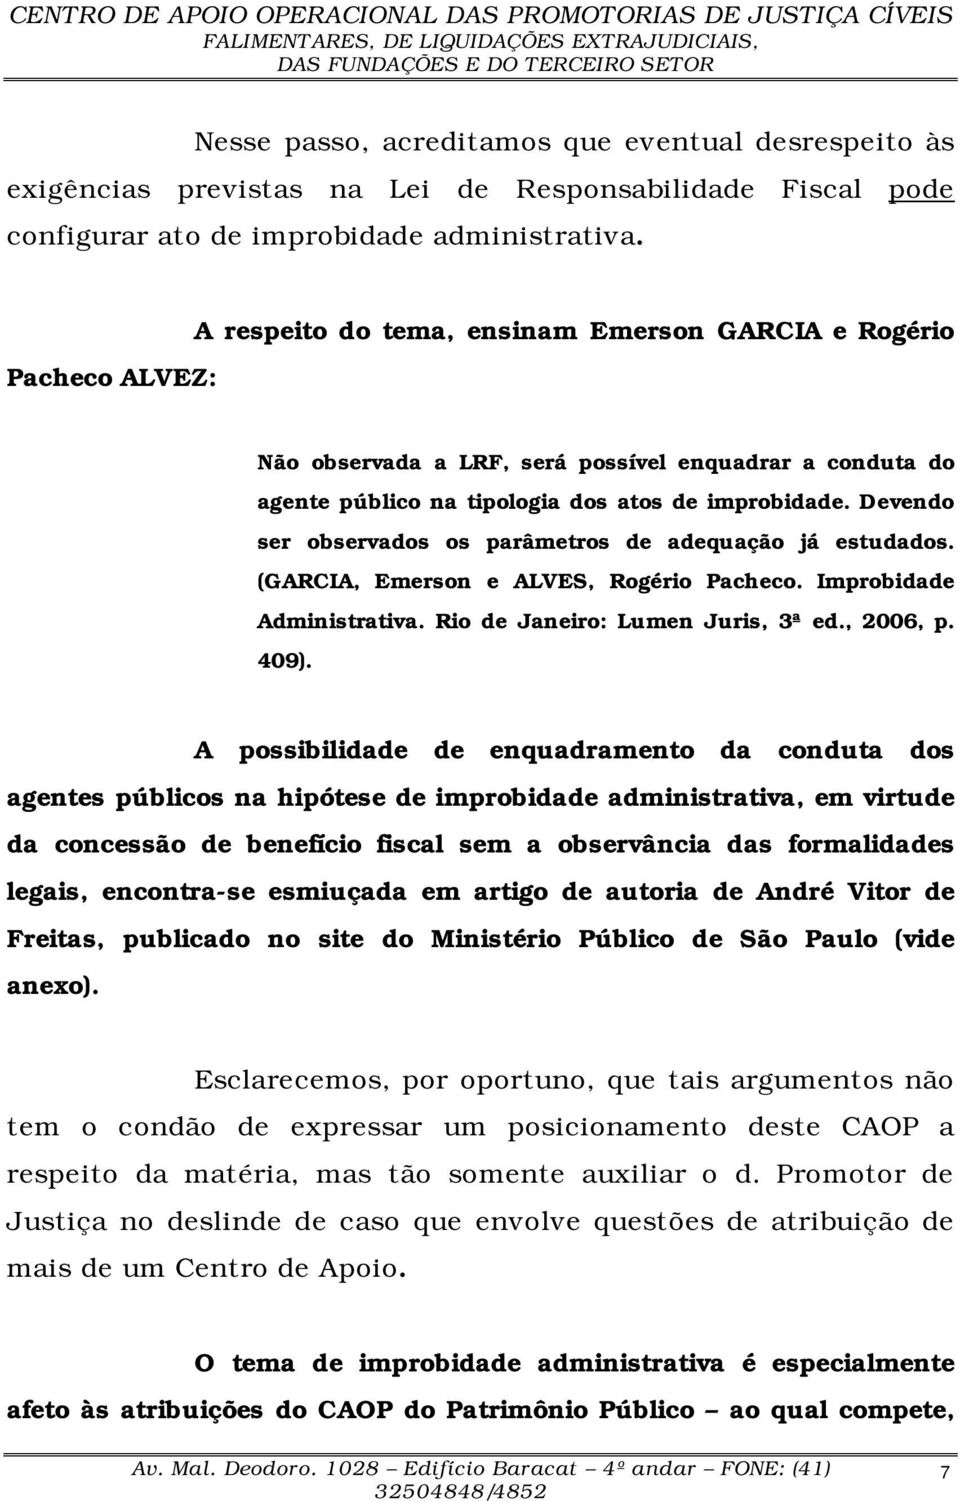 Devendo ser observados os parâmetros de adequação já estudados. (GARCIA, Emerson e ALVES, Rogério Pacheco. Improbidade Administrativa. Rio de Janeiro: Lumen Juris, 3ª ed., 2006, p. 409).